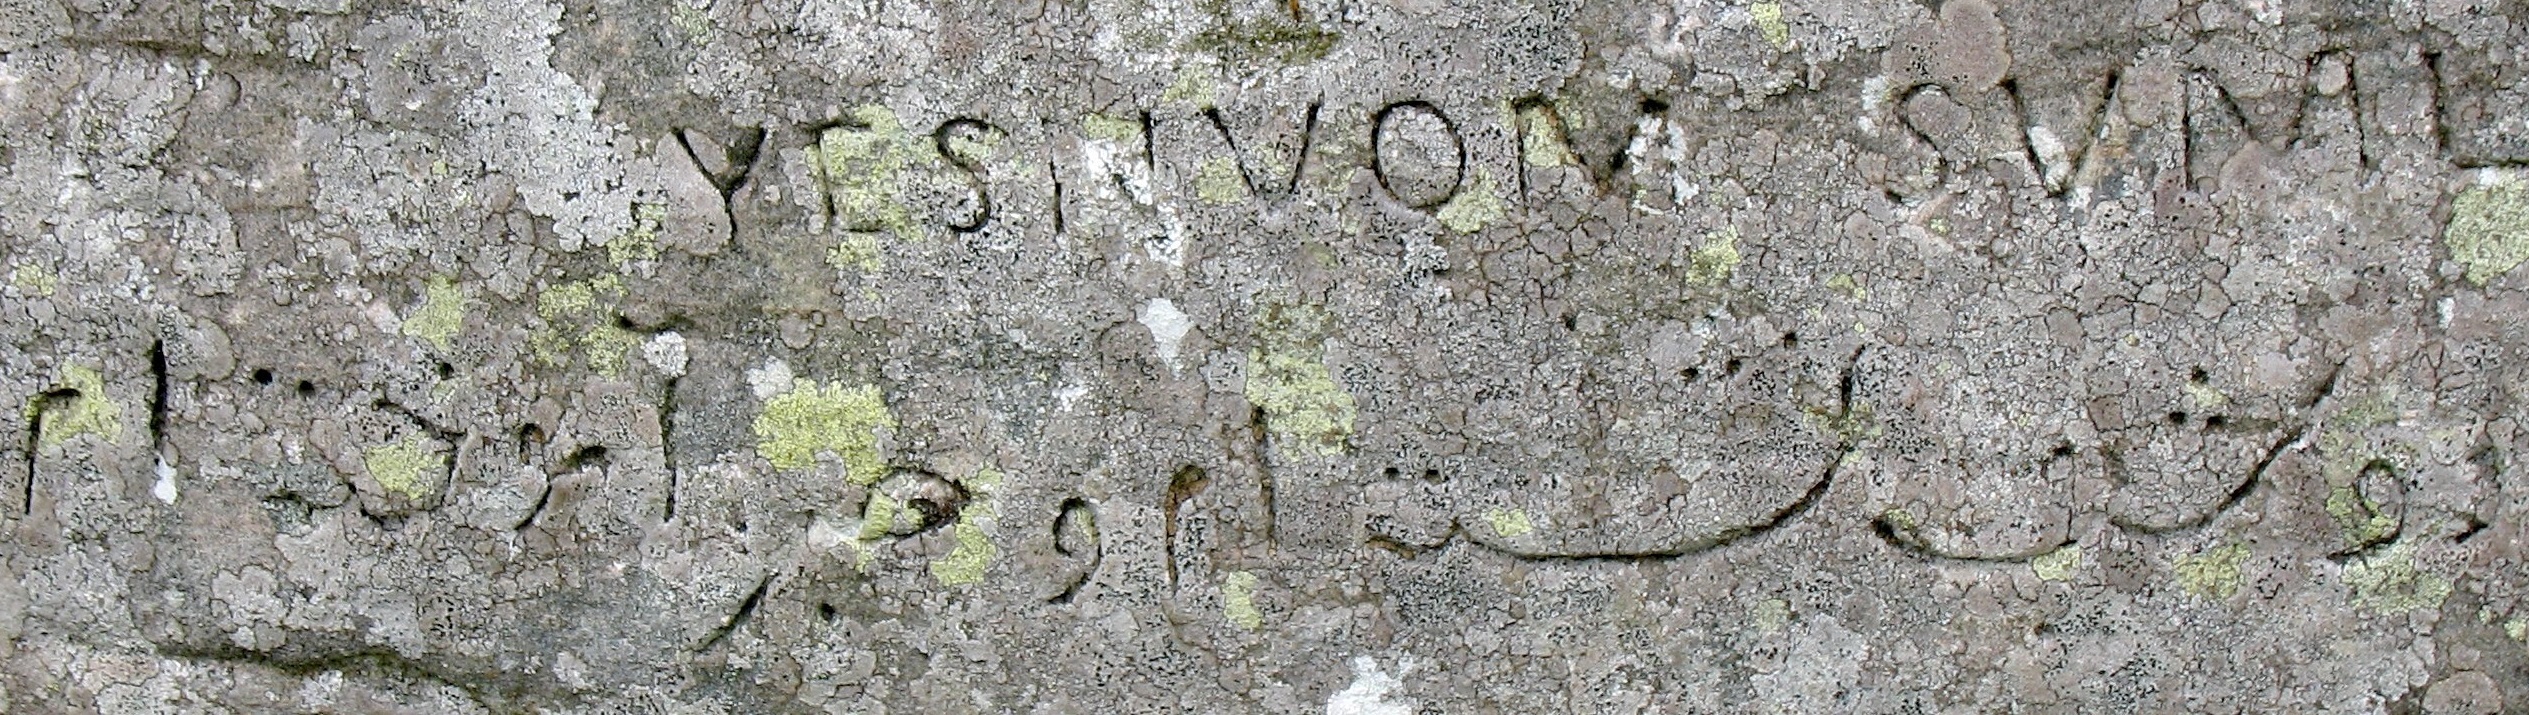  عبارت مرموز فارسی بر صخره ۵ هزار ساله اسکاتلندی+ عکس